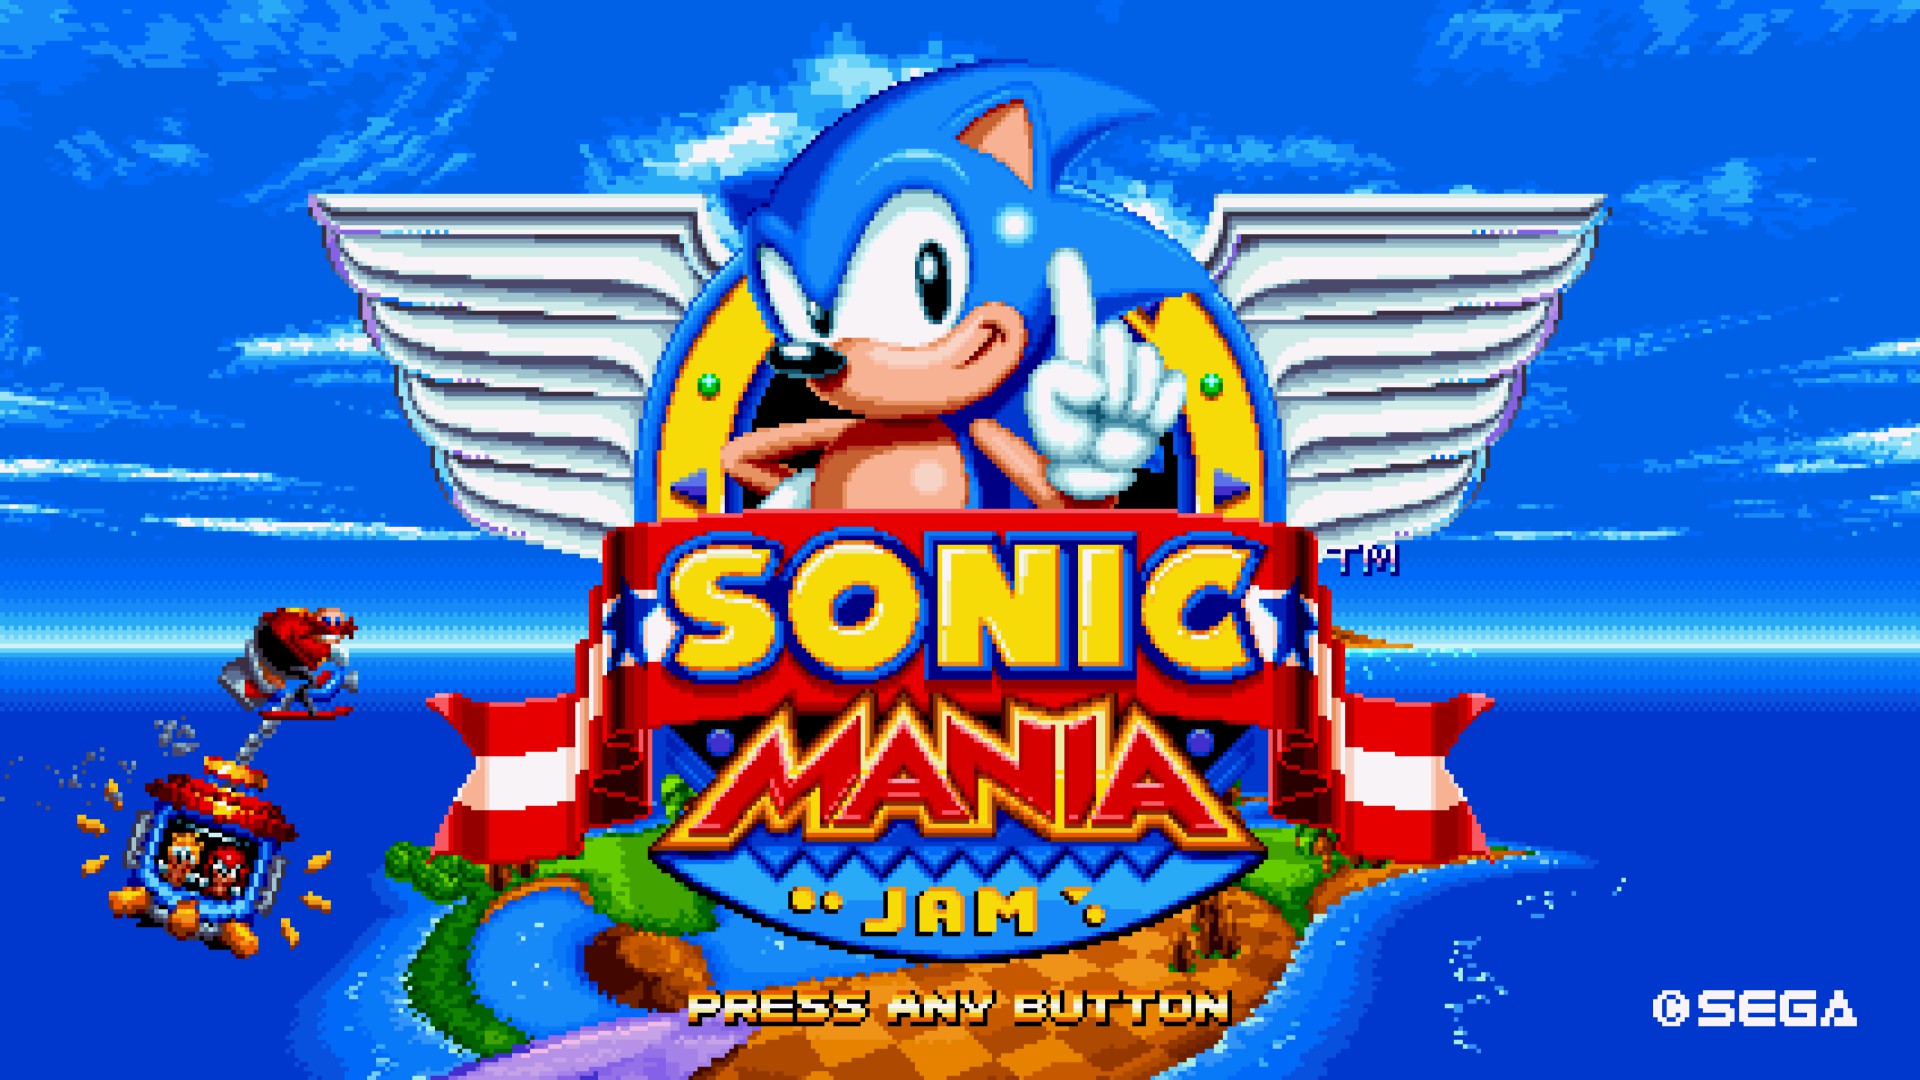 Sprite comparison for Mania's intro animation (SegaSonic, Sonic 1